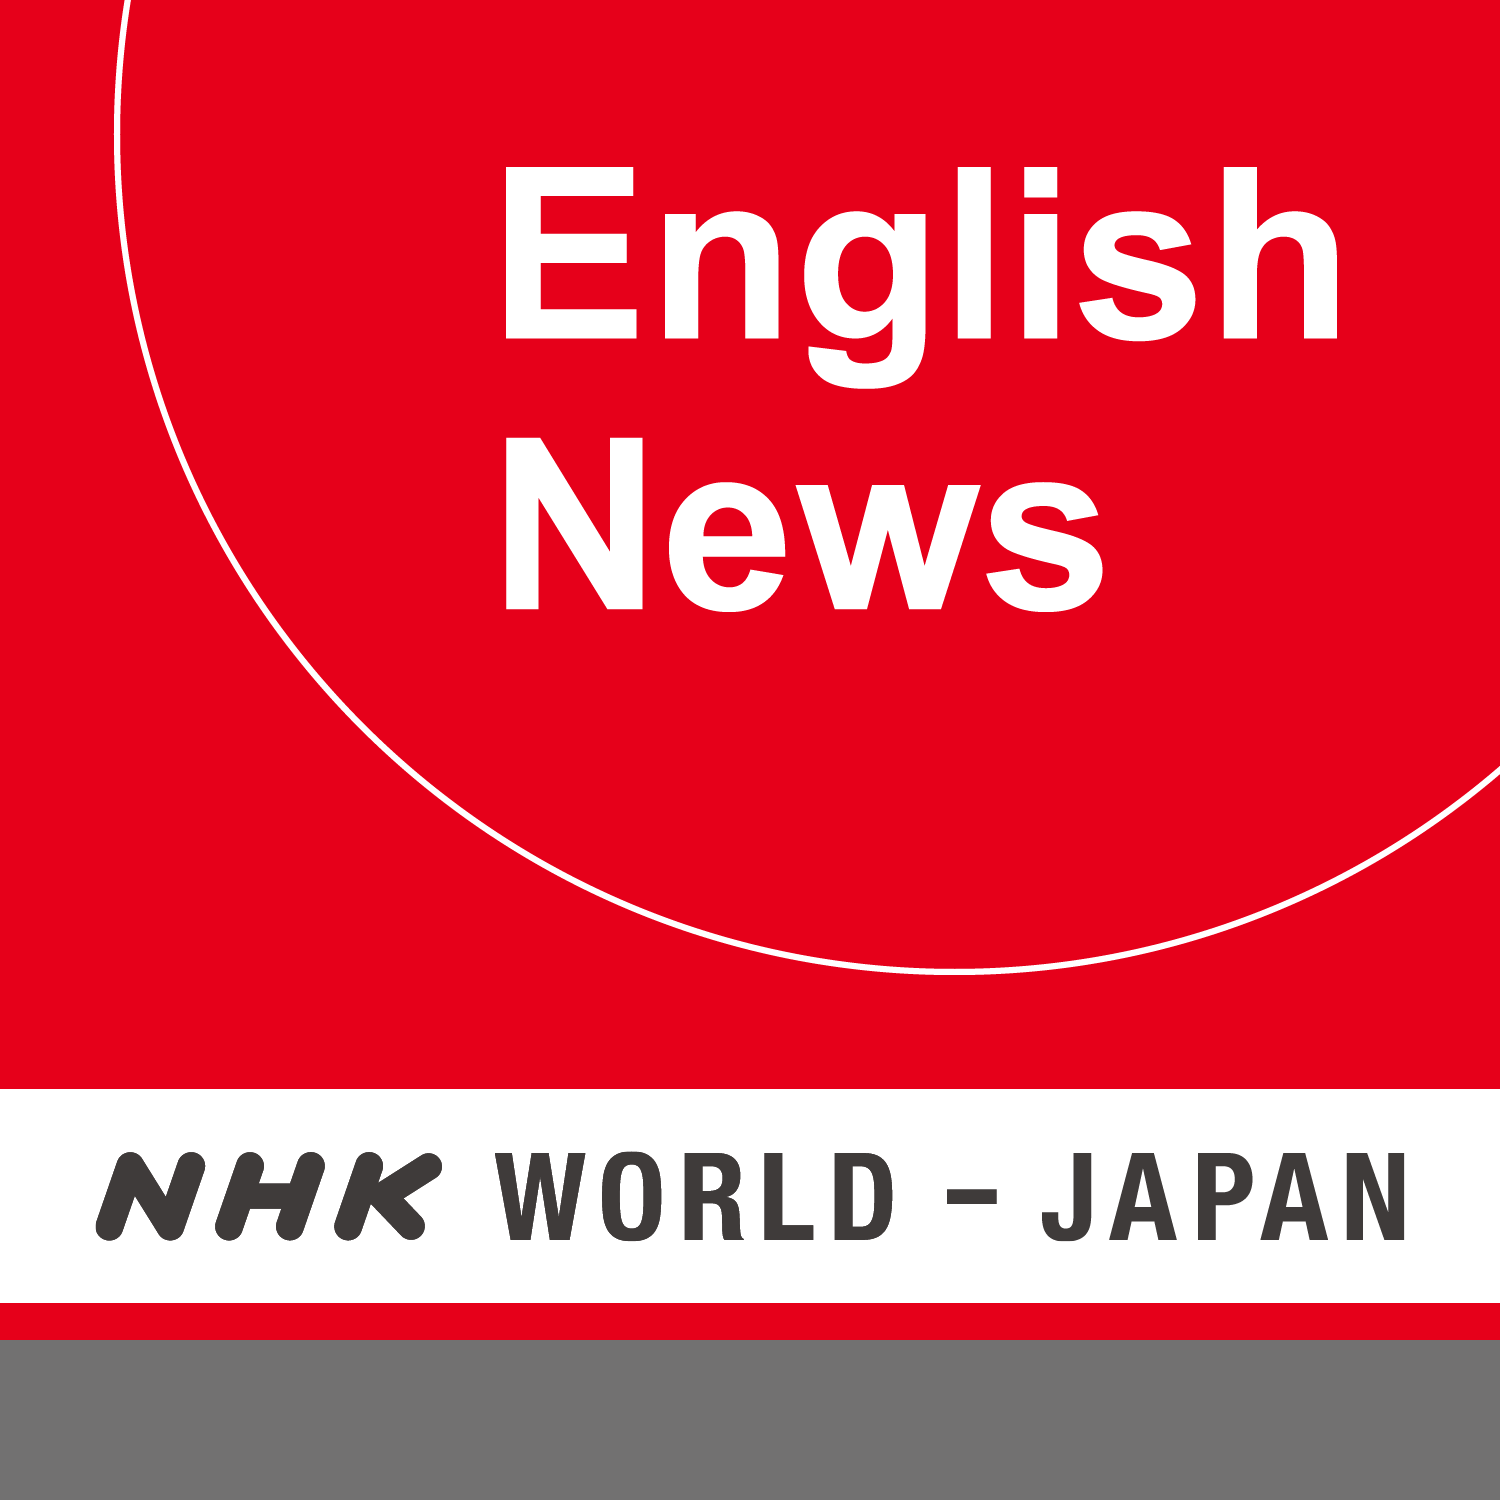 NHK WORLD RADIO JAPAN - English News at 13:30 (JST), November 28